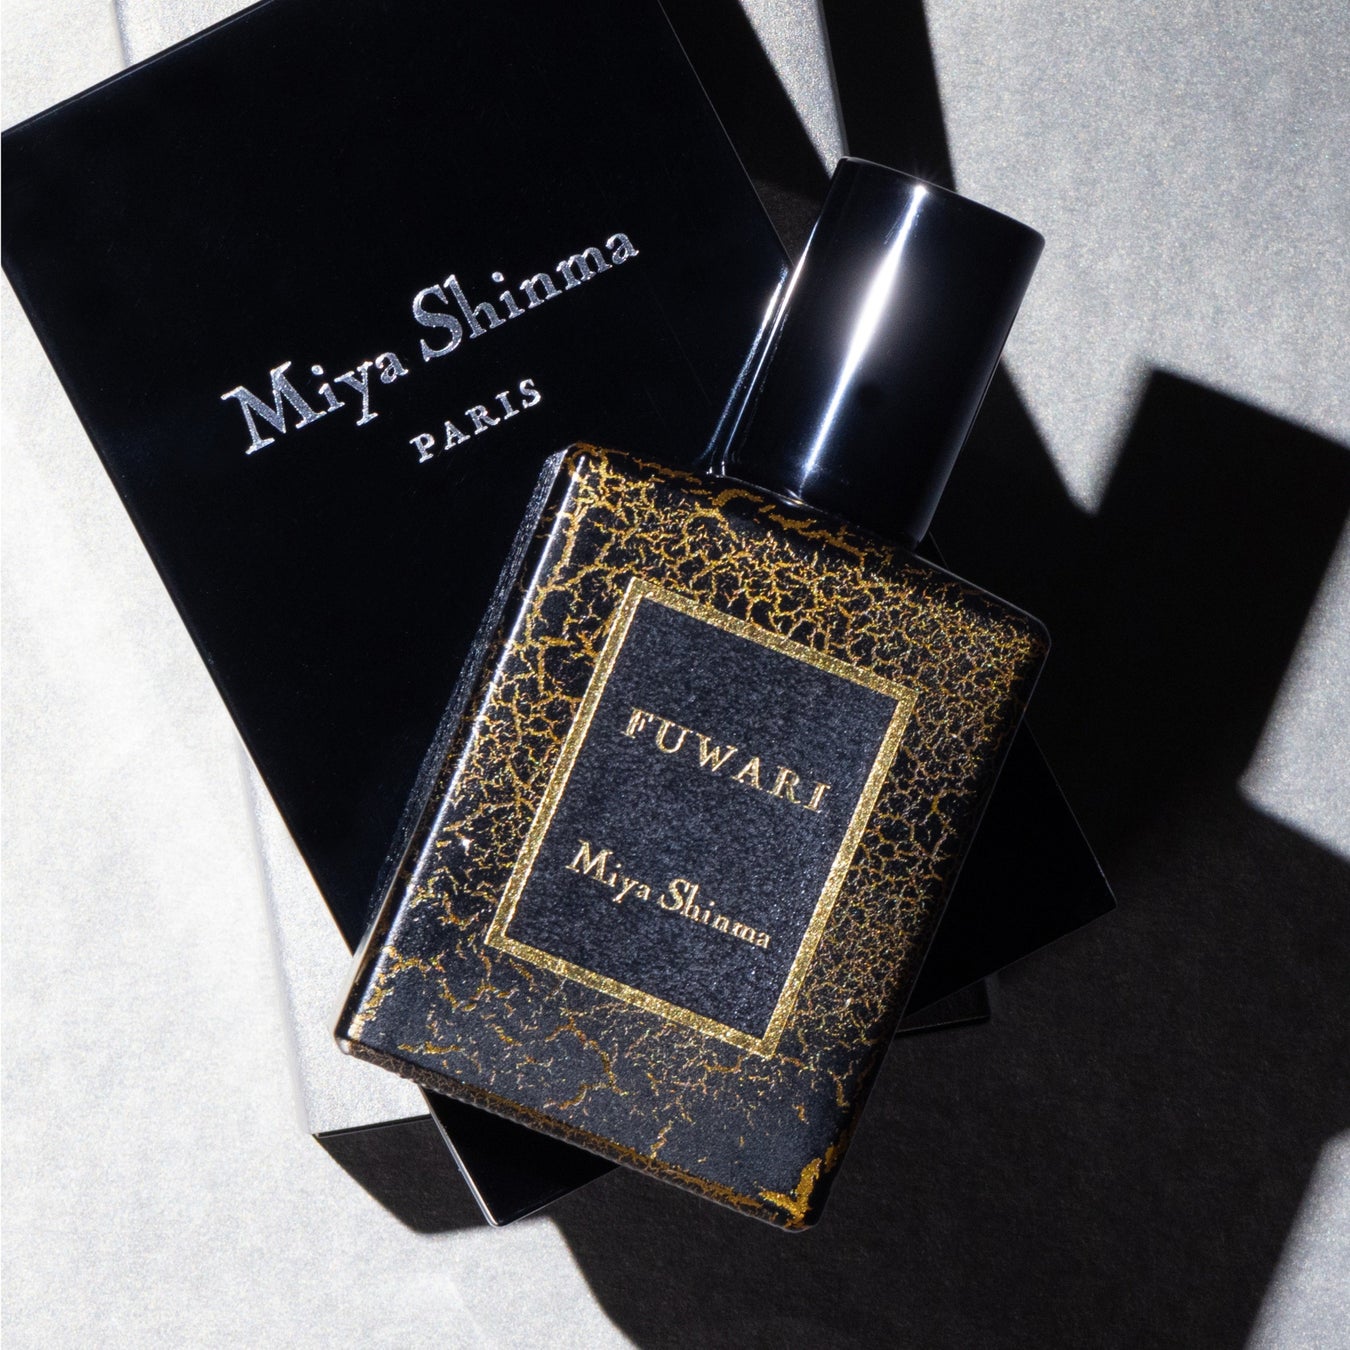 パリの調香師新間美也氏によるMiya Shinma Parisから美しいローズドメの香り「FUWARI」が5/25(土)に発売。